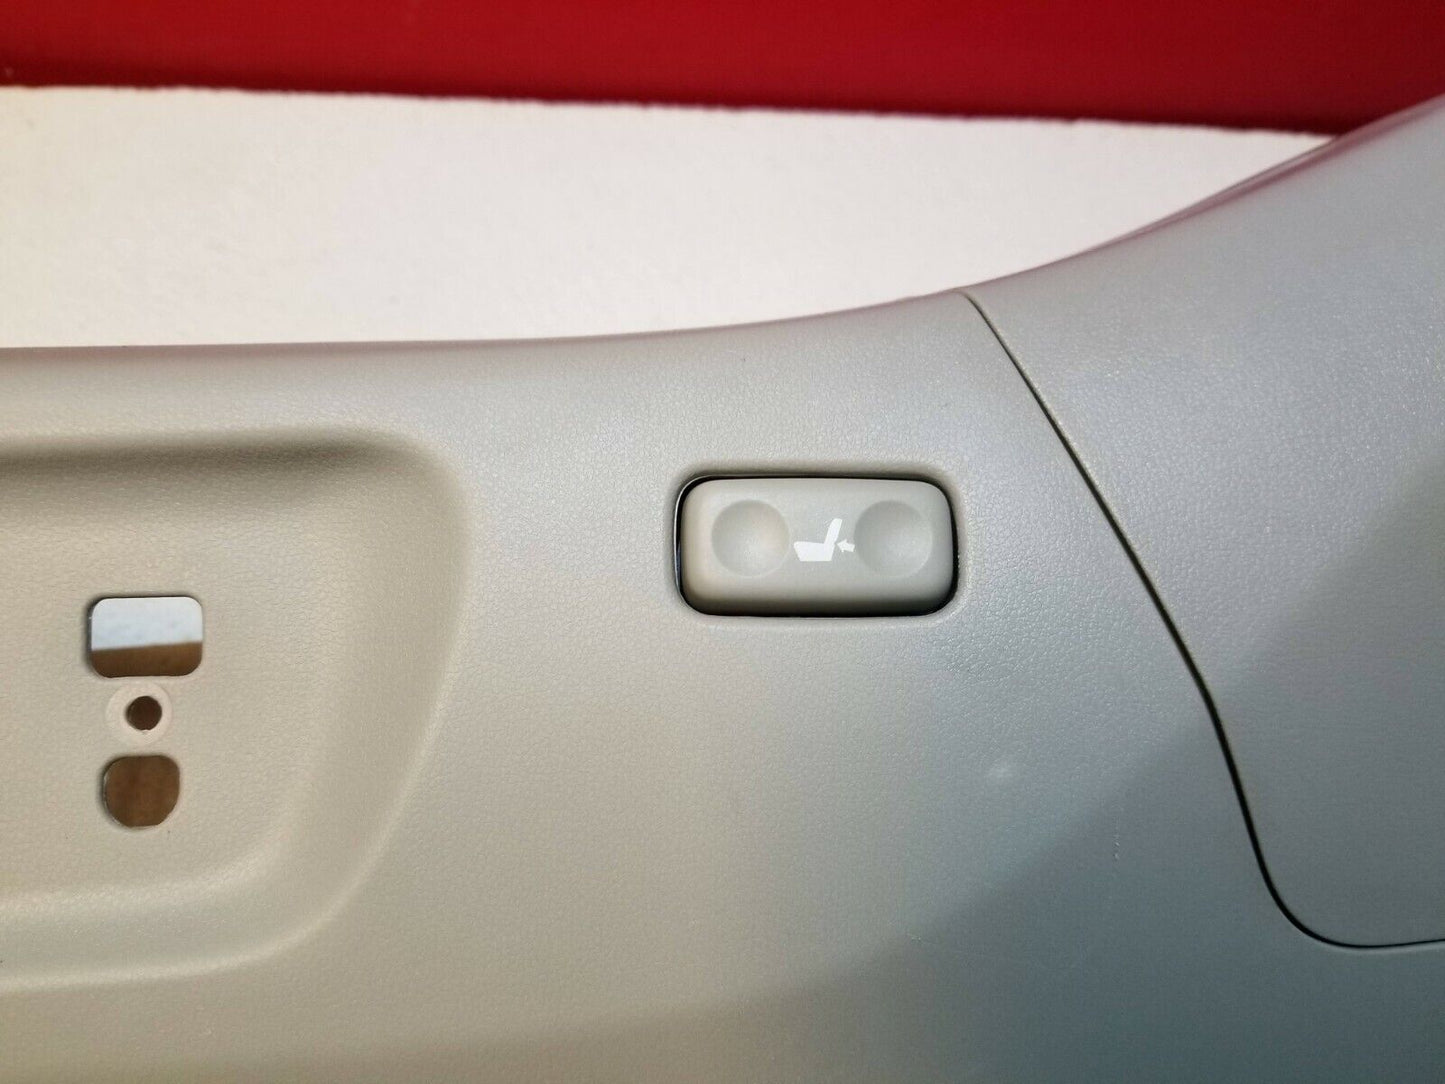 07 08 09 Lexus ES350 Front Left Driver Seat Side Trim Panel Cover OEM